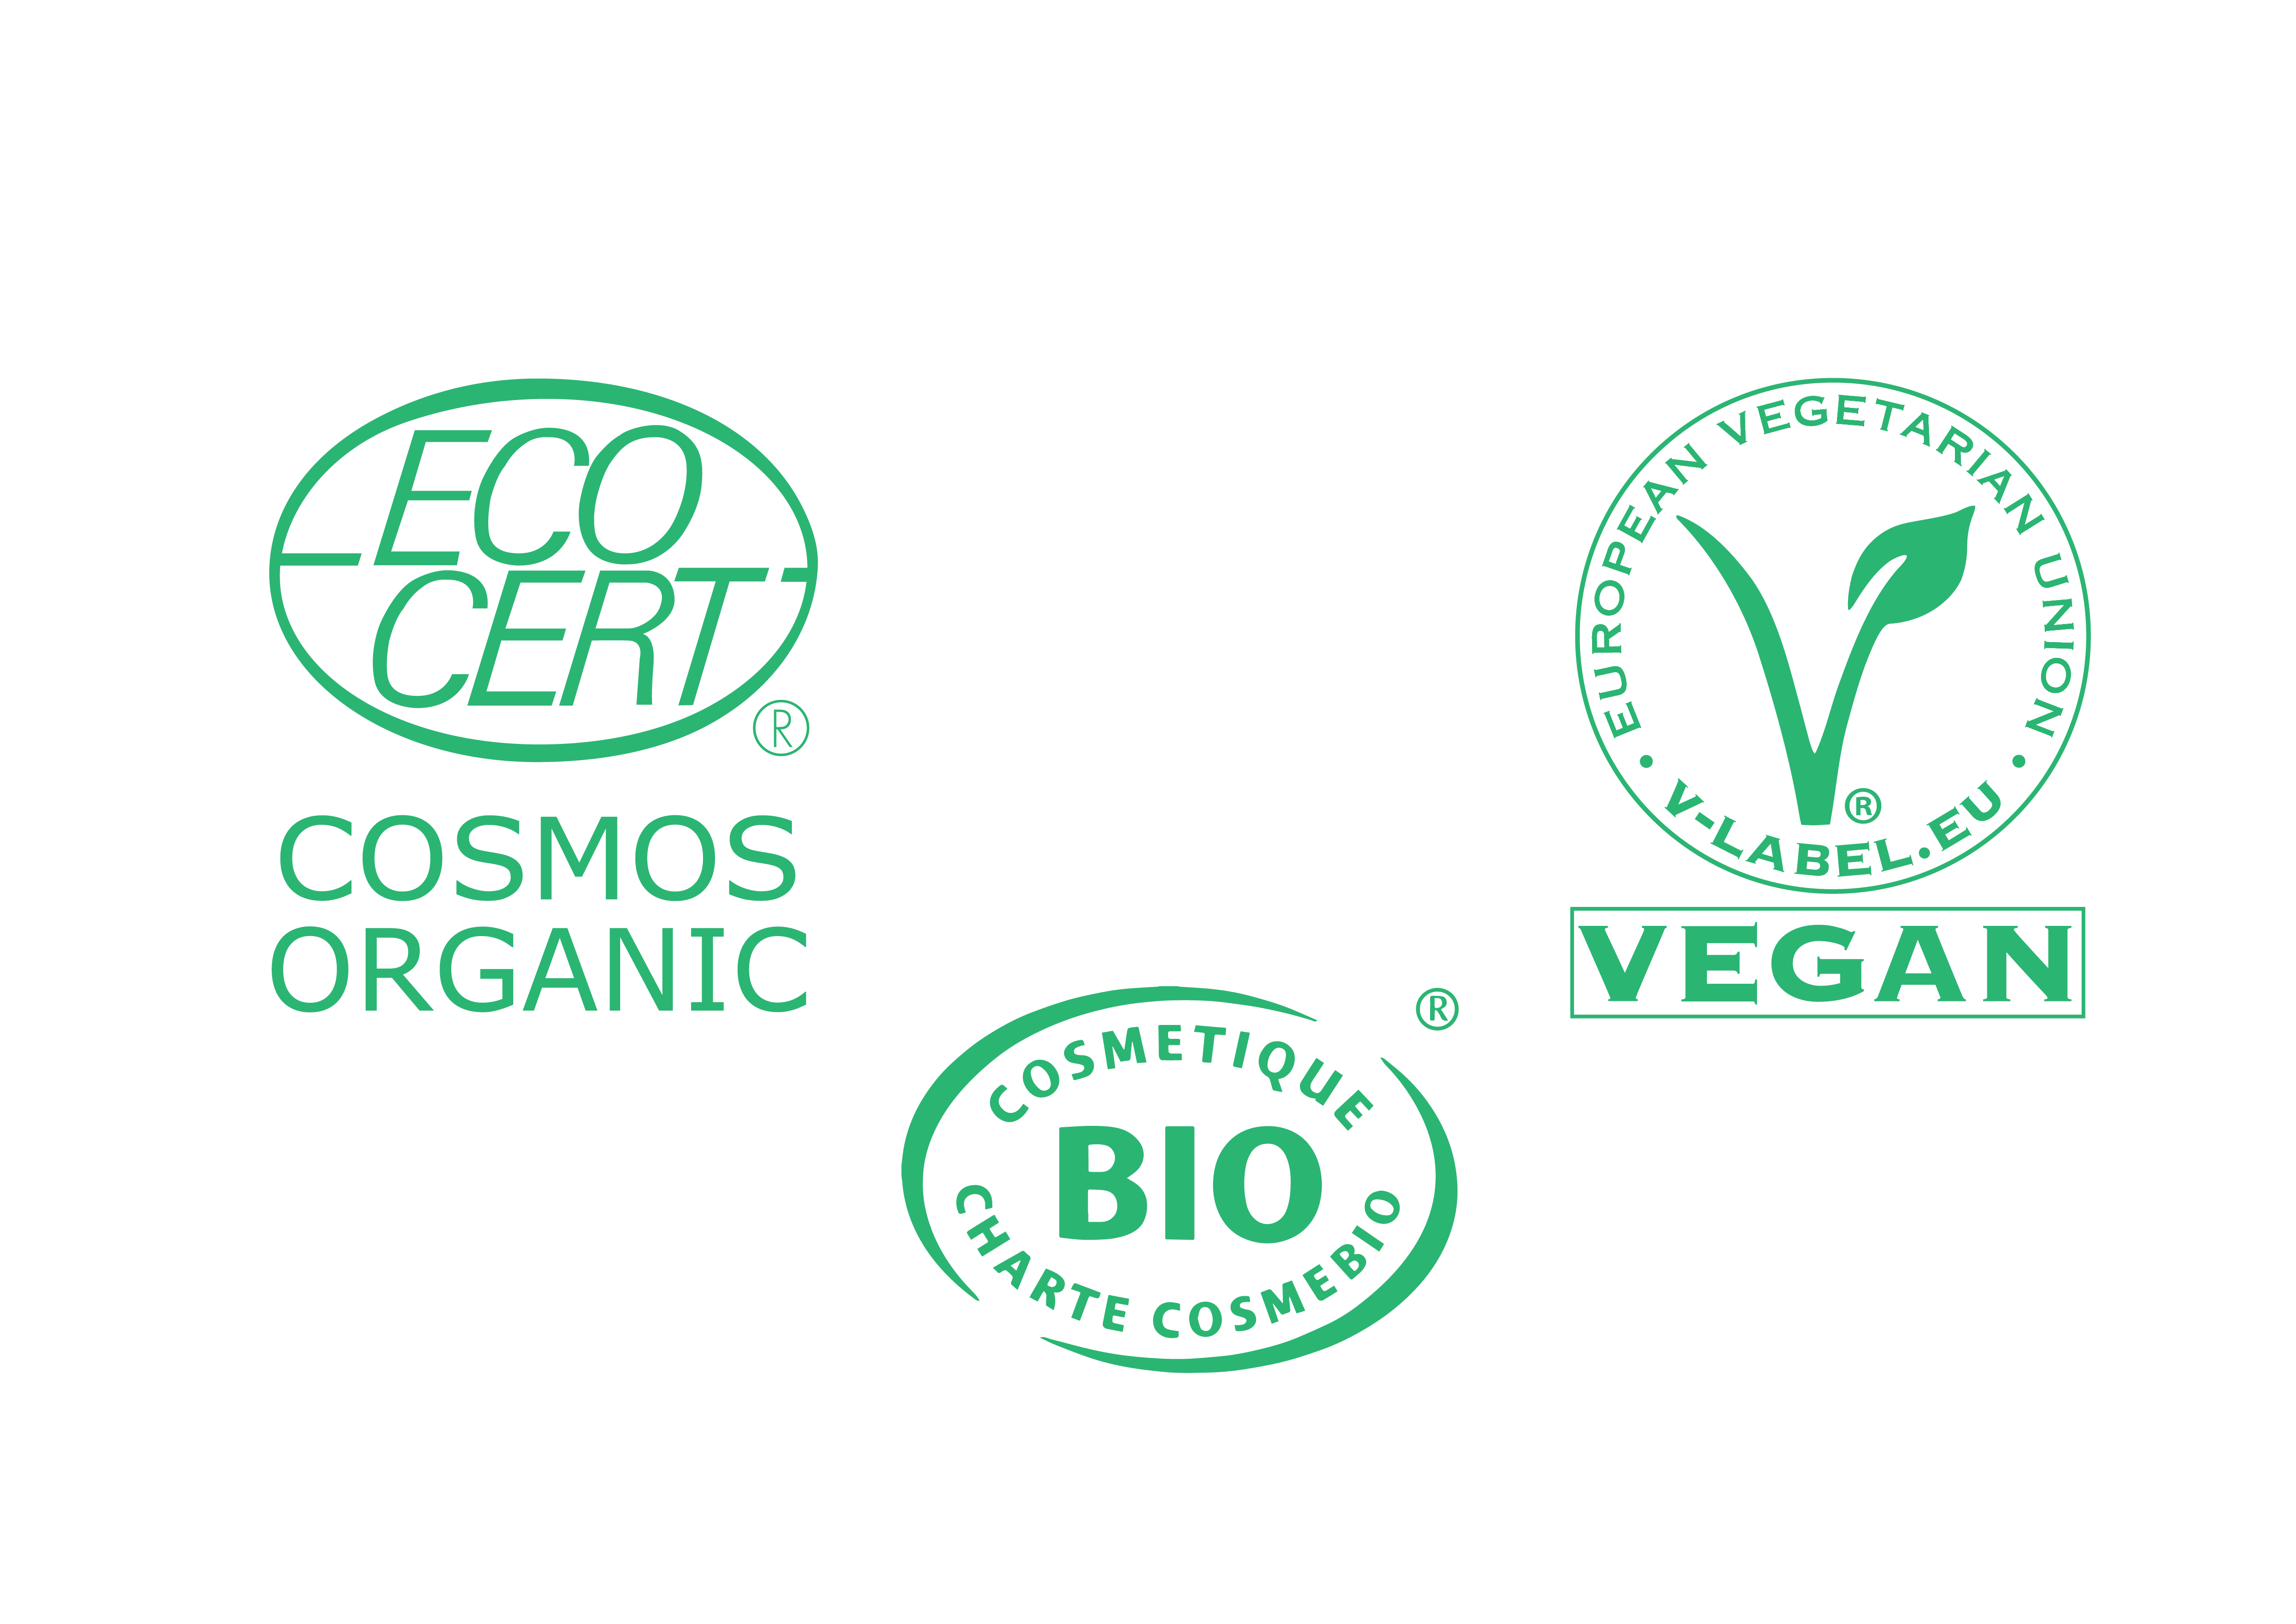 Certificaciones Eco: Cosmos Organic, Cosmetique BIO